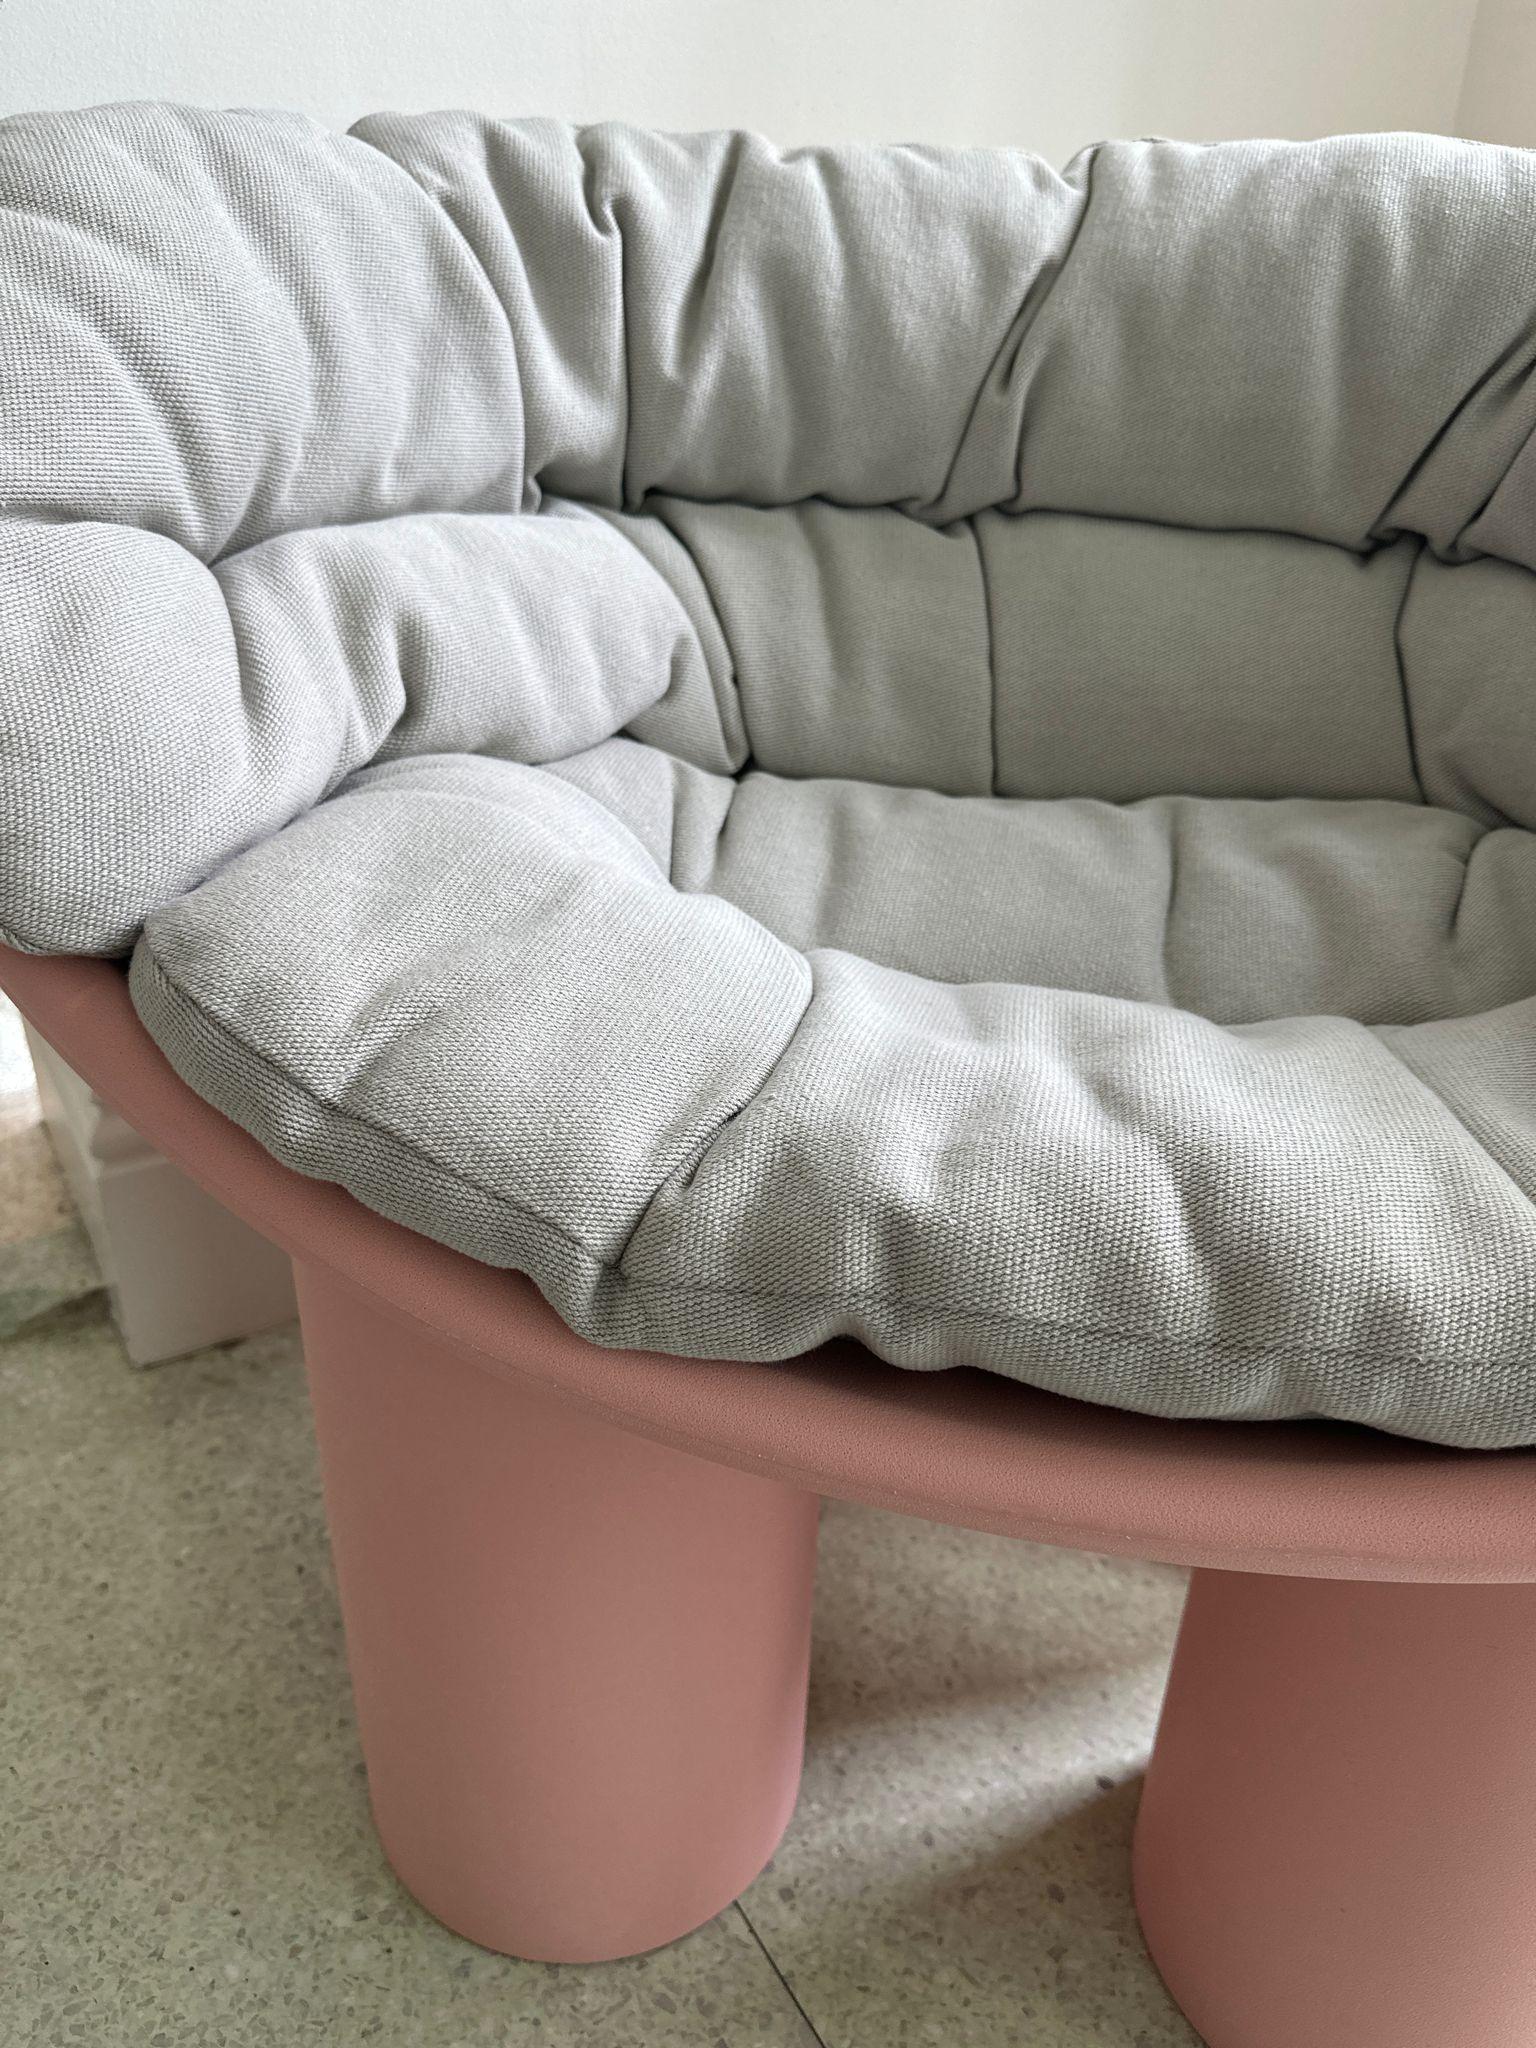 Die Roly Poly Collection, bestehend aus einem Sessel und einem Sofa, verkörpert die Konzepte von Möbeln und Skulpturen und repräsentiert damit die Philosophie von Driade auf perfekte Weise. Charakteristisch für diese Monoblock-Möbel ist die